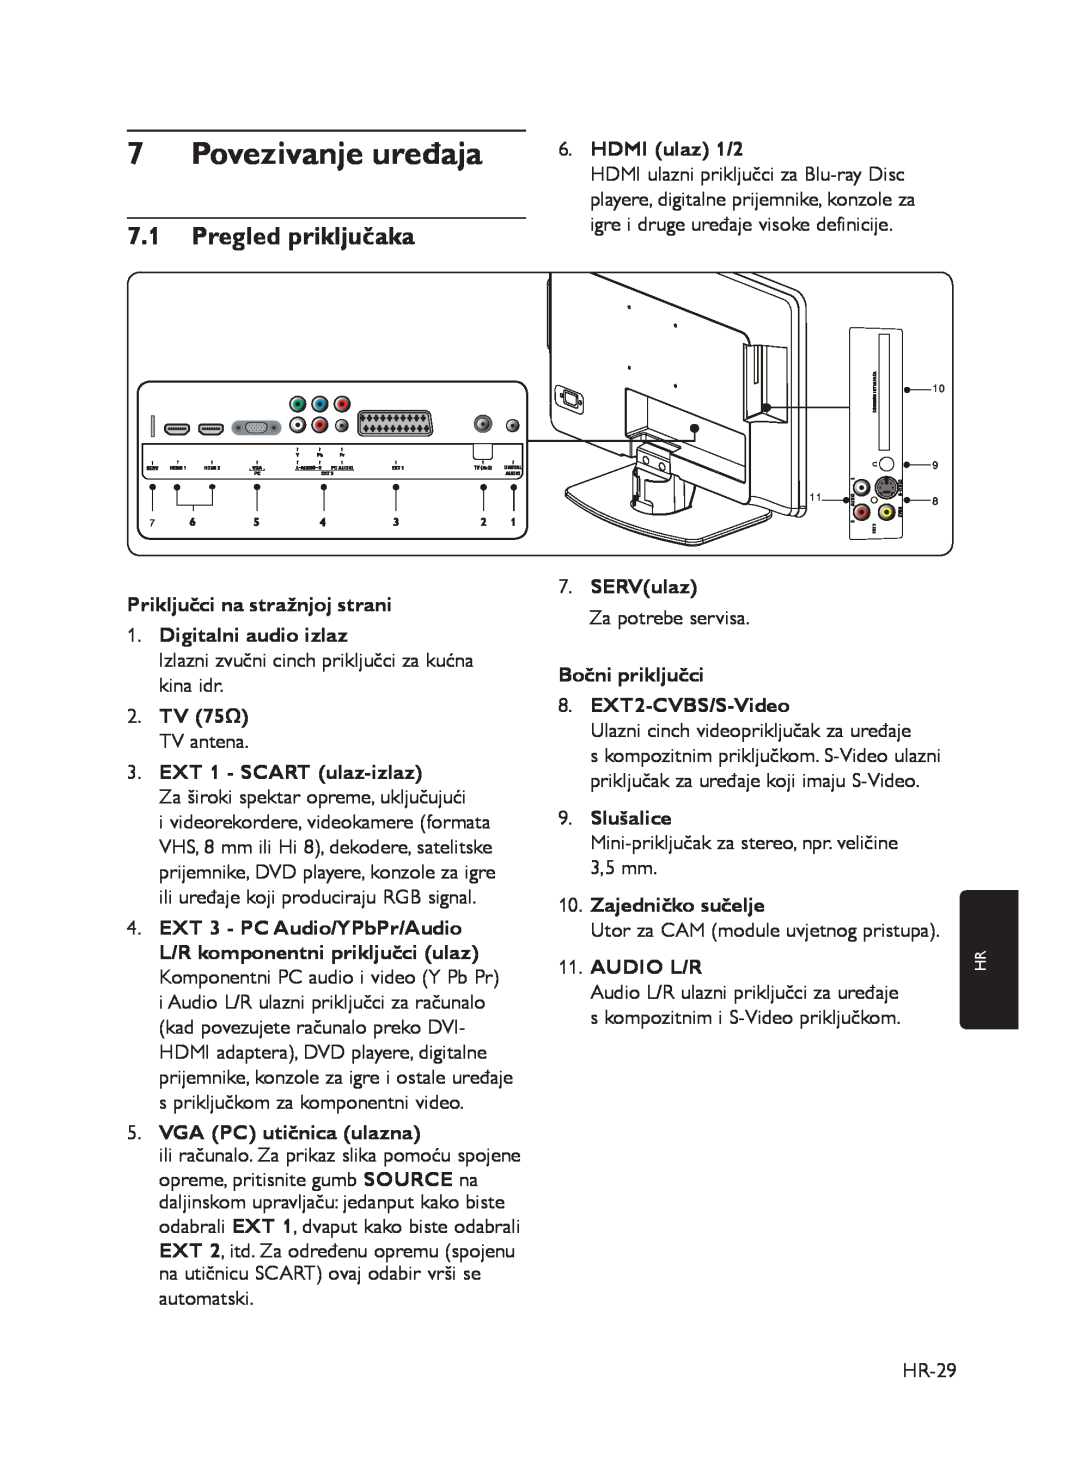 Philips 72-T540M5-X411C manual Povezivanje uređaja, Pregled priključaka, HDMI ulaz 1/2, EXT 1 - SCART ulaz-izlaz, SERVulaz 